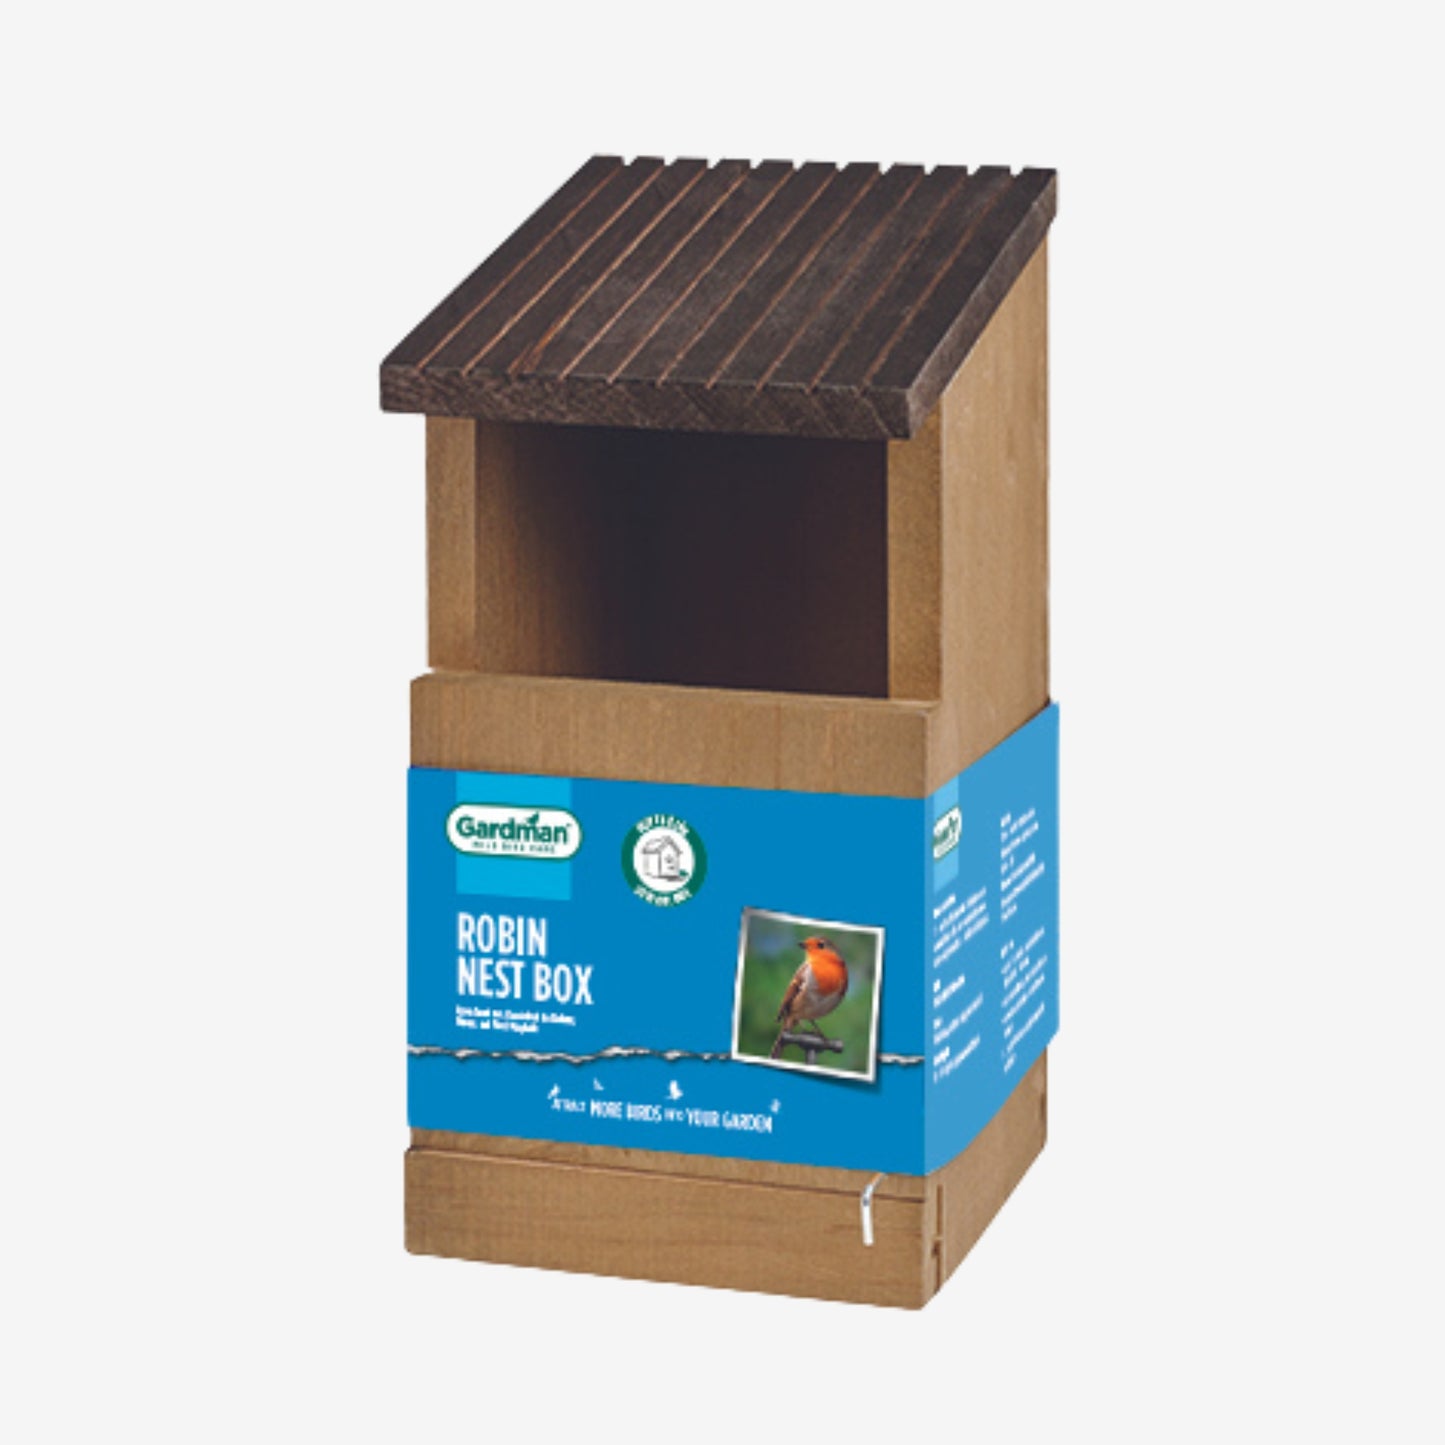 gardman robin nest box packaging